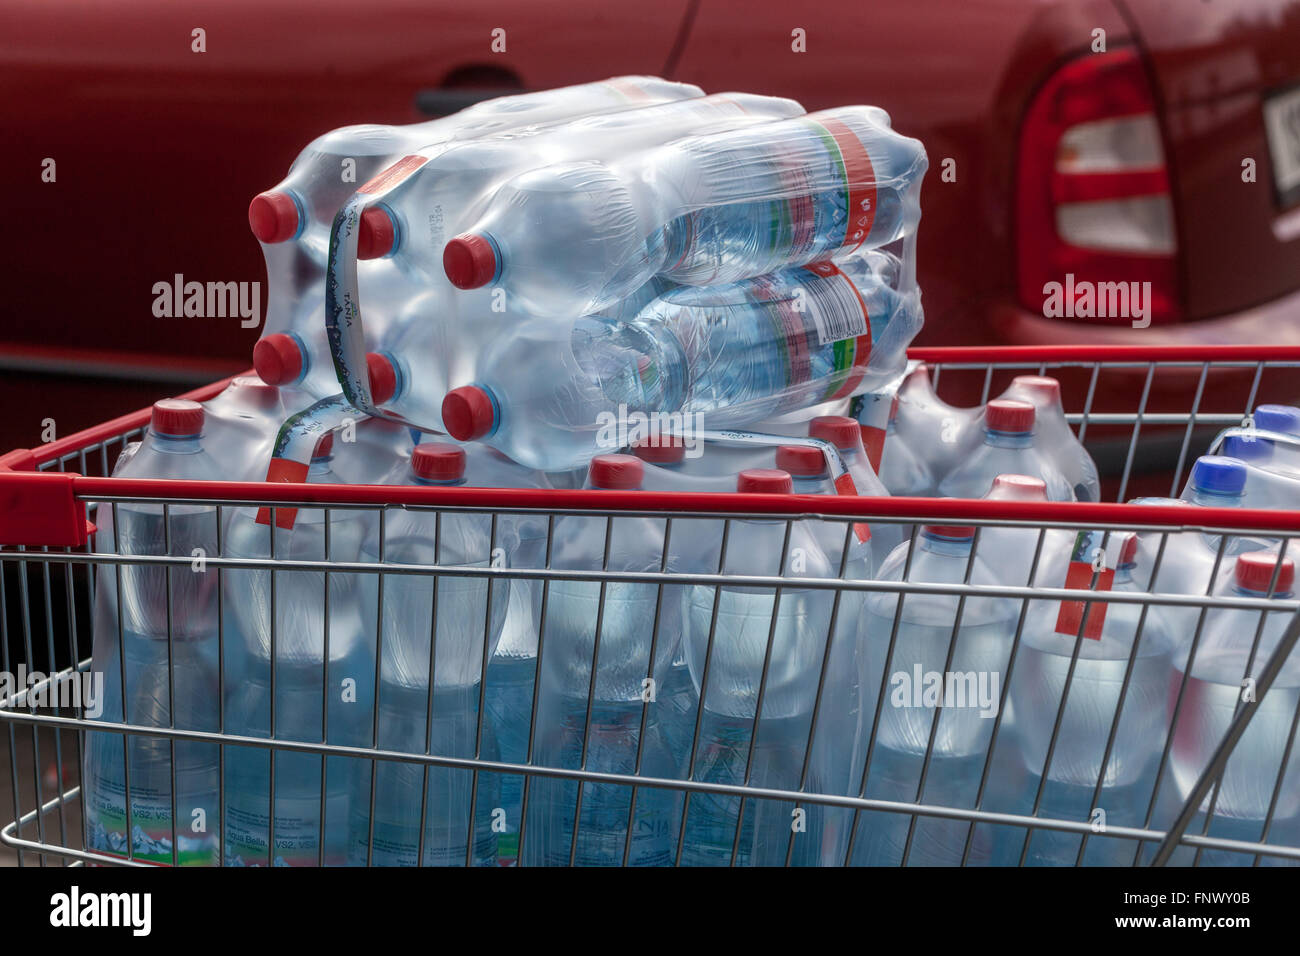 Agua embotellada, agua potable, botellas de plástico en un carrito de la compra Foto de stock